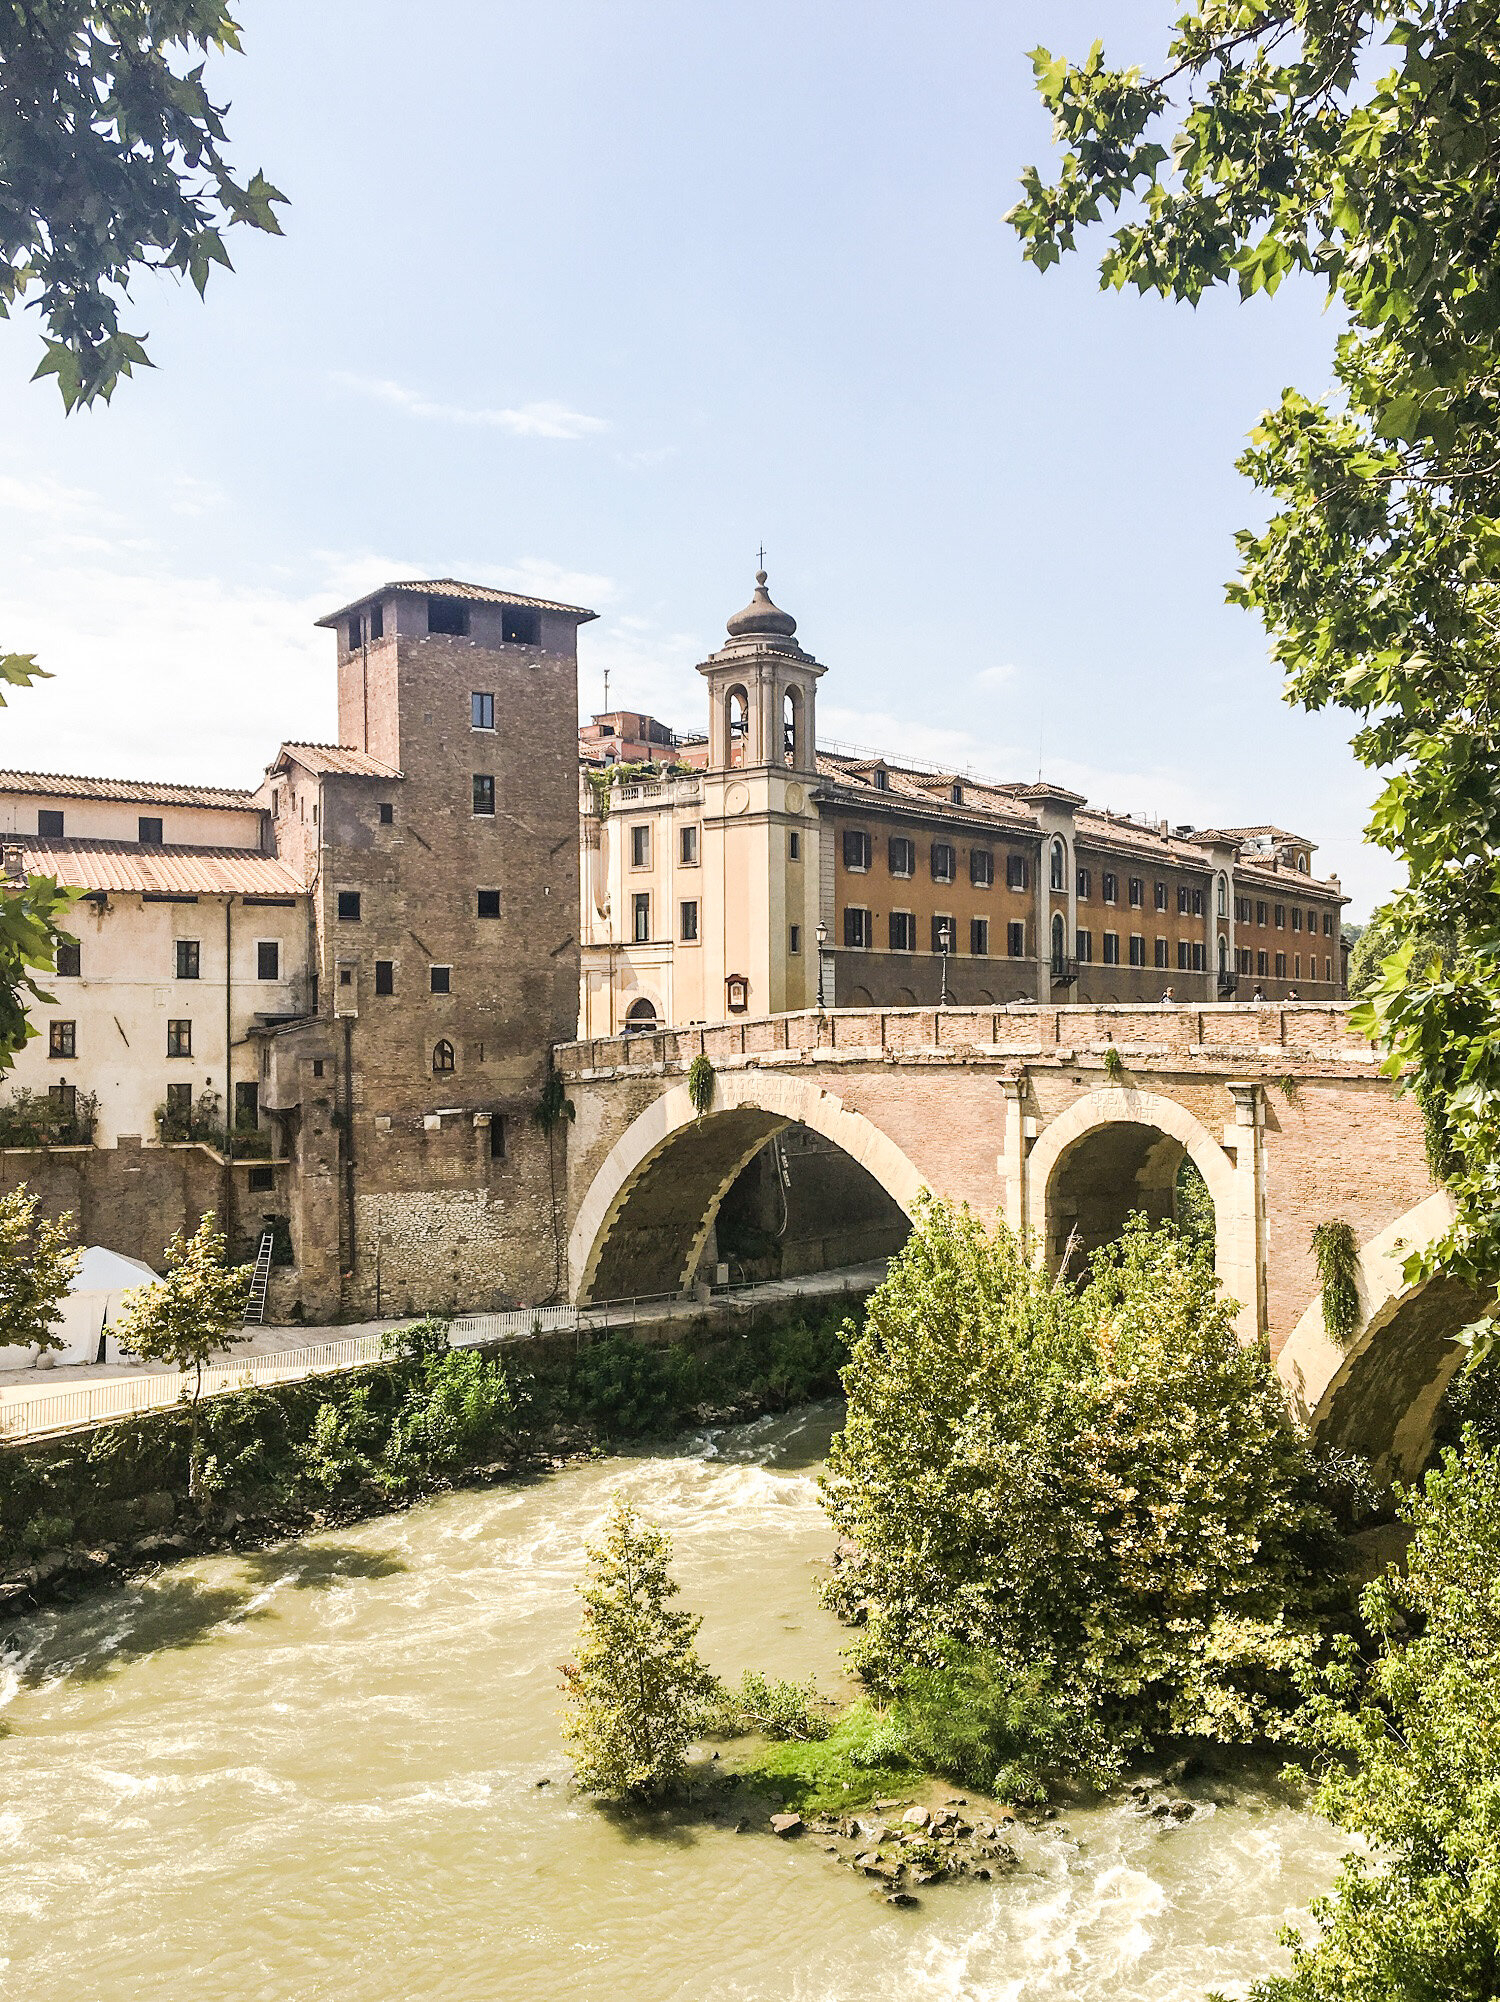 Ponte Fabricio, the oldest bridge in Rome